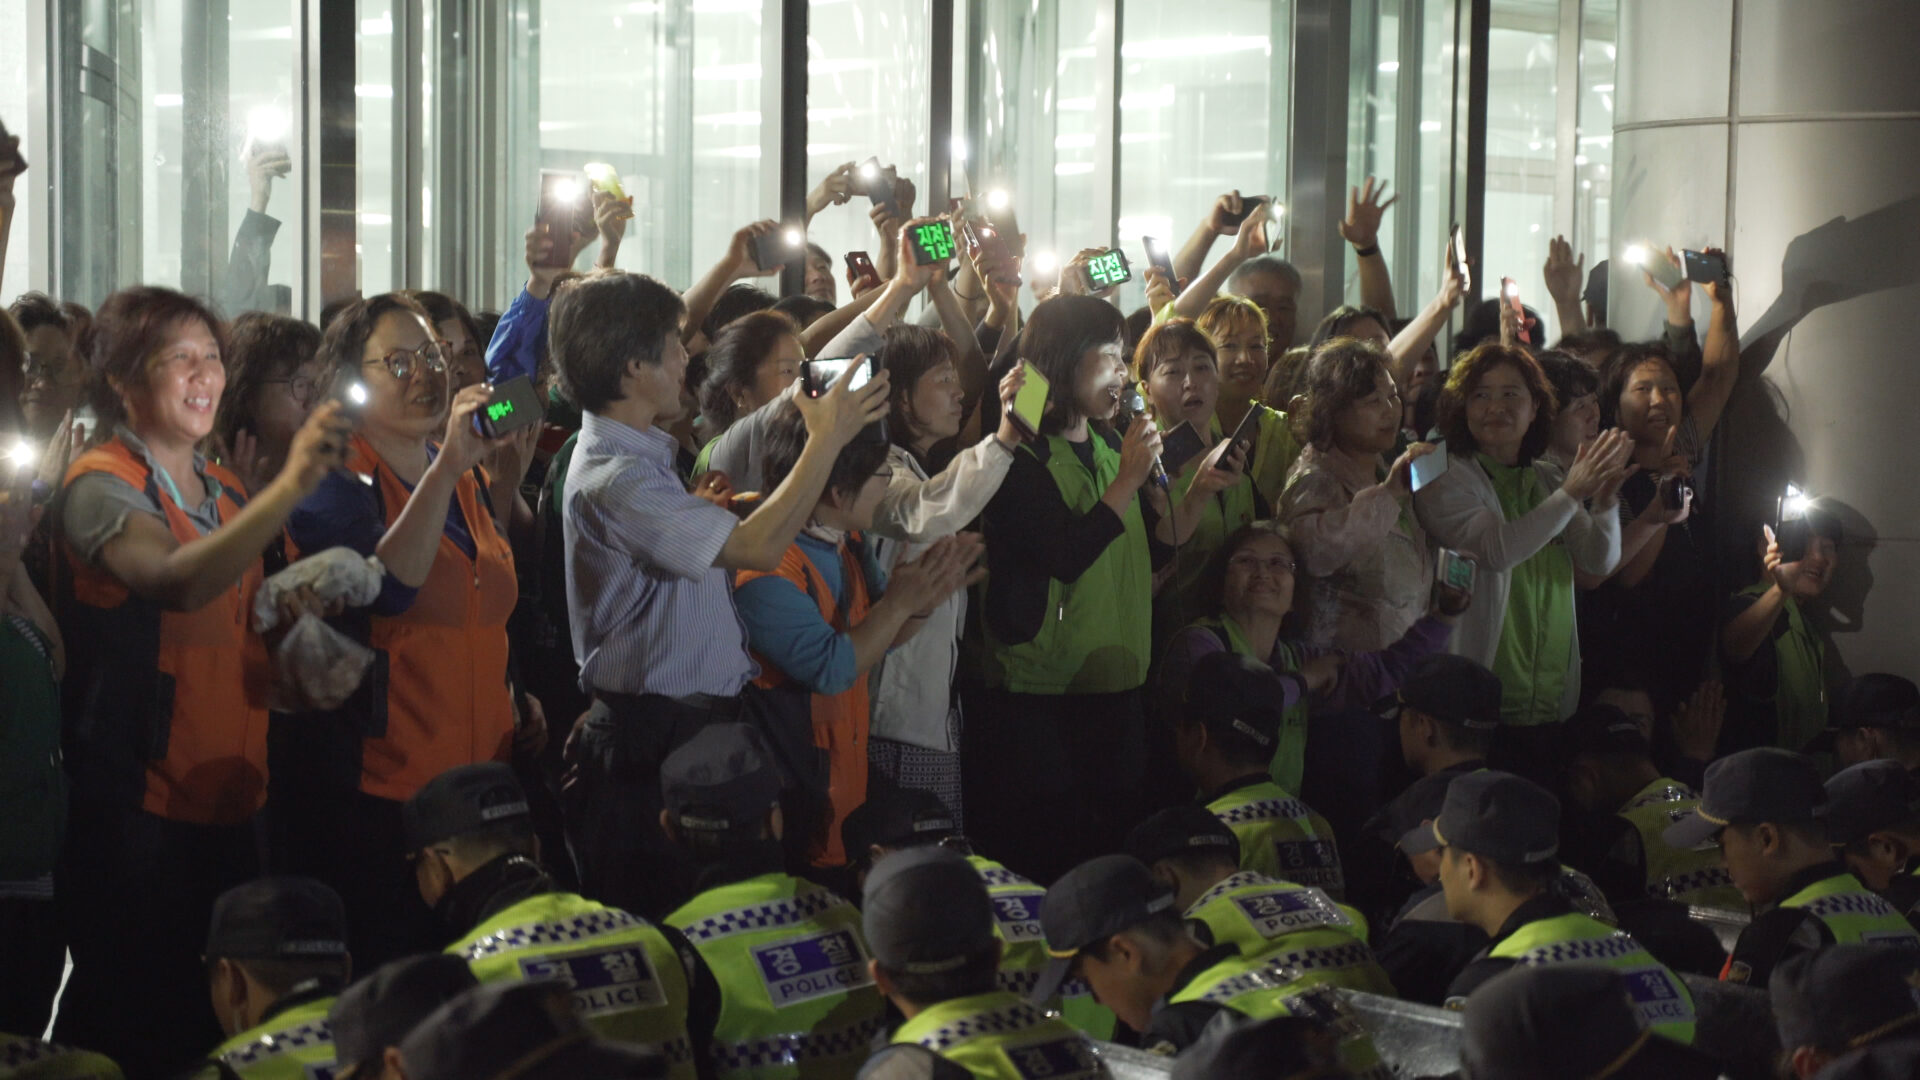 보라보라 스틸컷1.해가 진 저녁, 한국도로공사 김천본사 앞에서 노동자들이 핸드폰 불빛과 후레쉬를 킨채 손을 흔들며 웃고있다. 한 노동자는 마이크를 들고 웃으며 사회를 보고 있다. 이들의 앞에는 경찰대오가 줄을 맞춰 앉아있다.